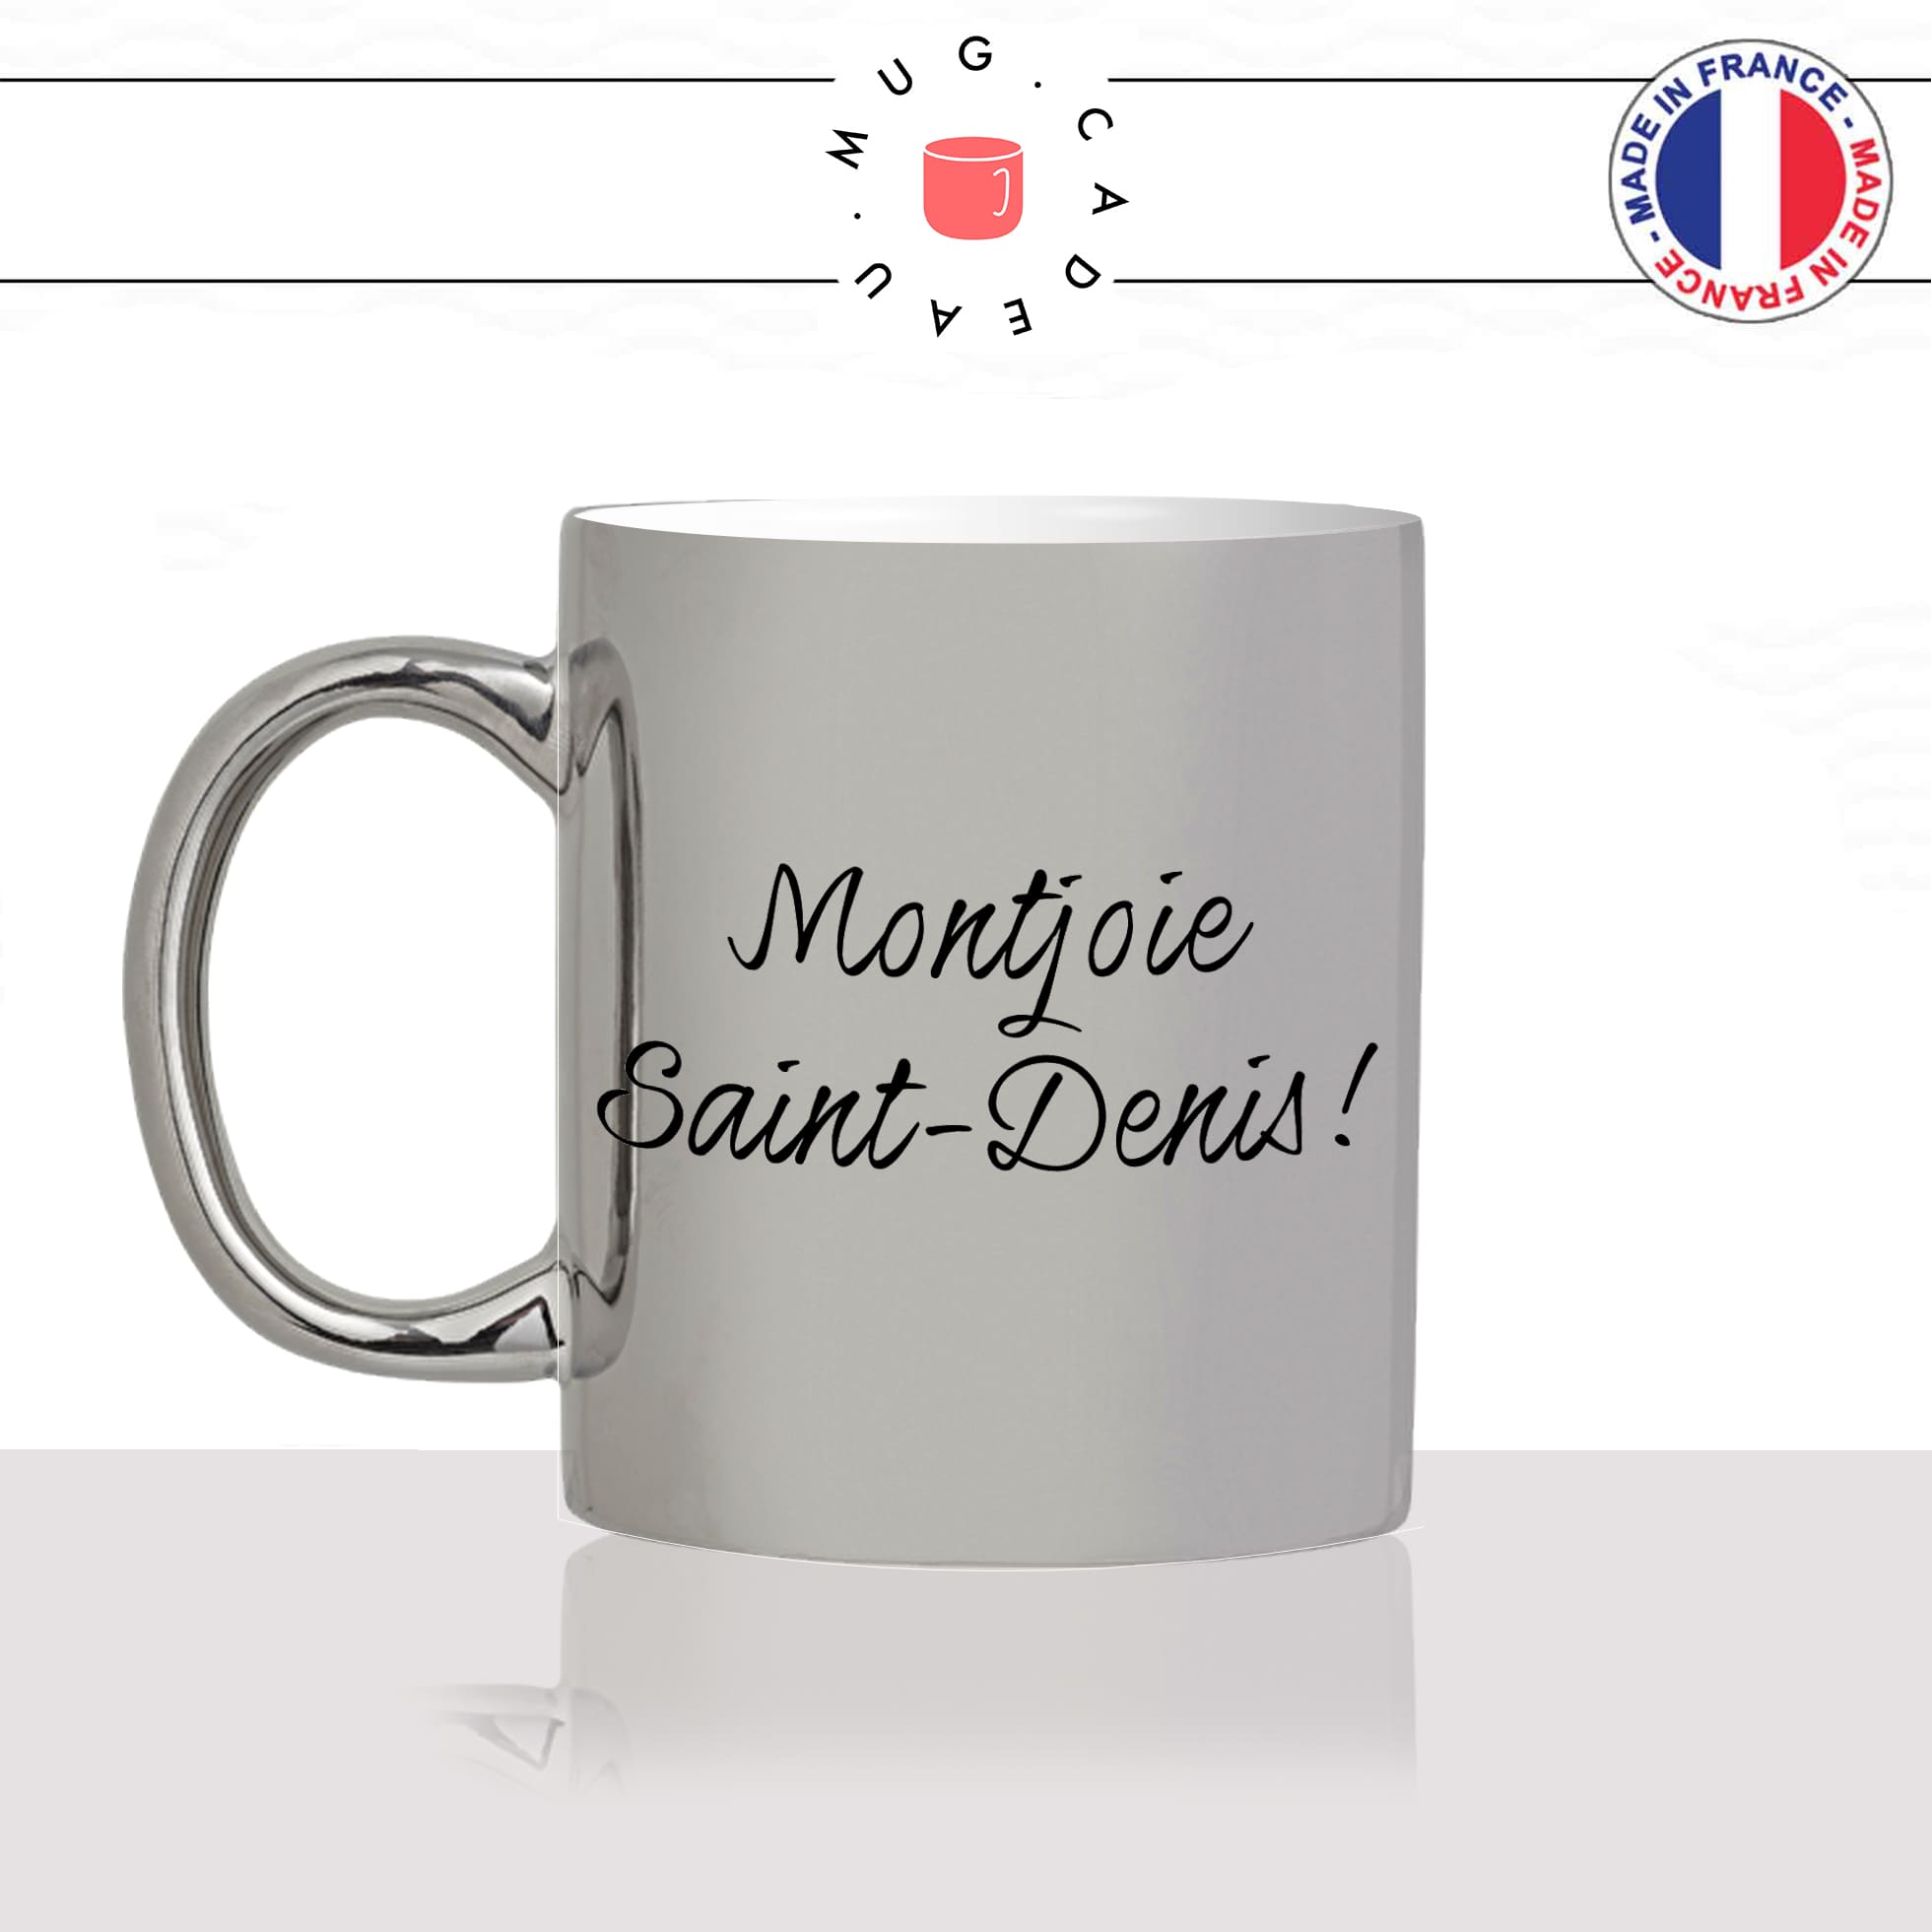 mug-tasse-argenté-argent-gris-silver-montjoie-saint-denis-les-visiteurs-gifle-homme-femme-film-francais-humour-fun-cool-idée-cadeau-original